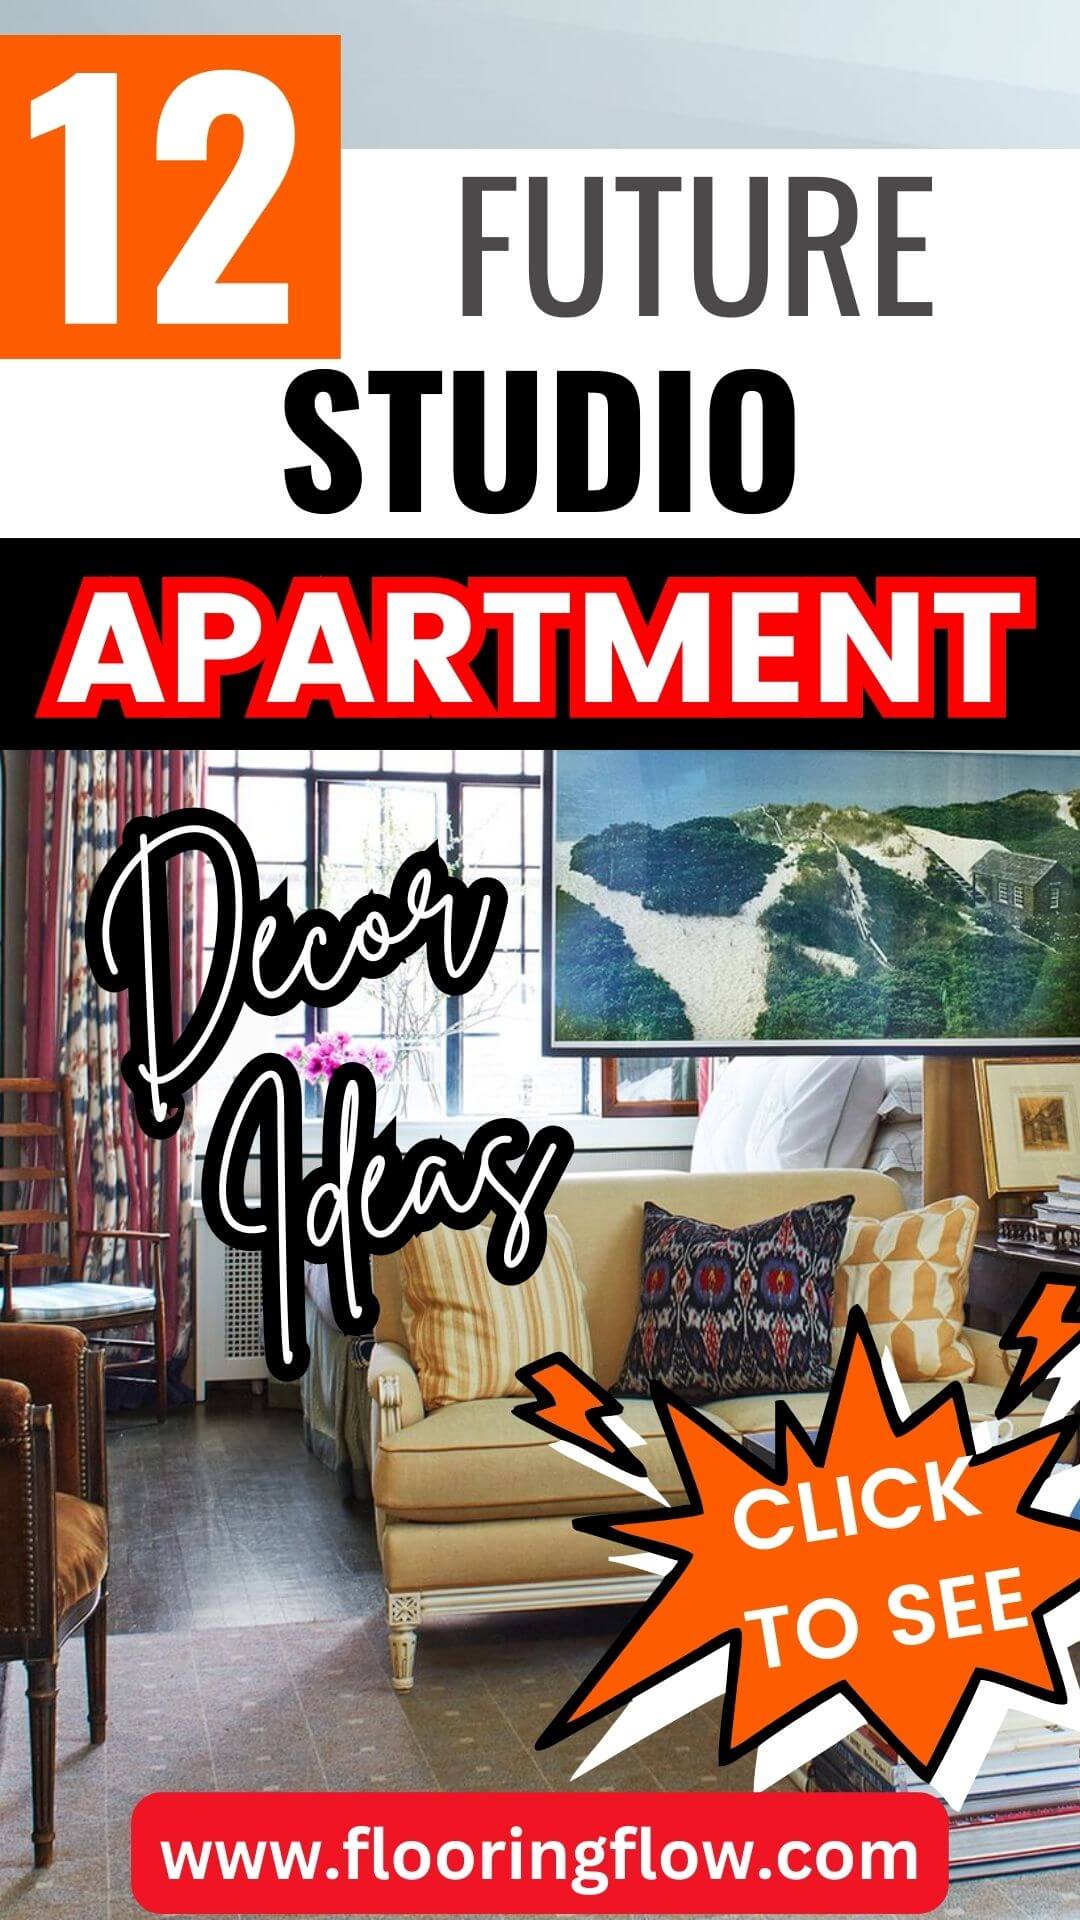 Future Studio Apartment Decor Ideas